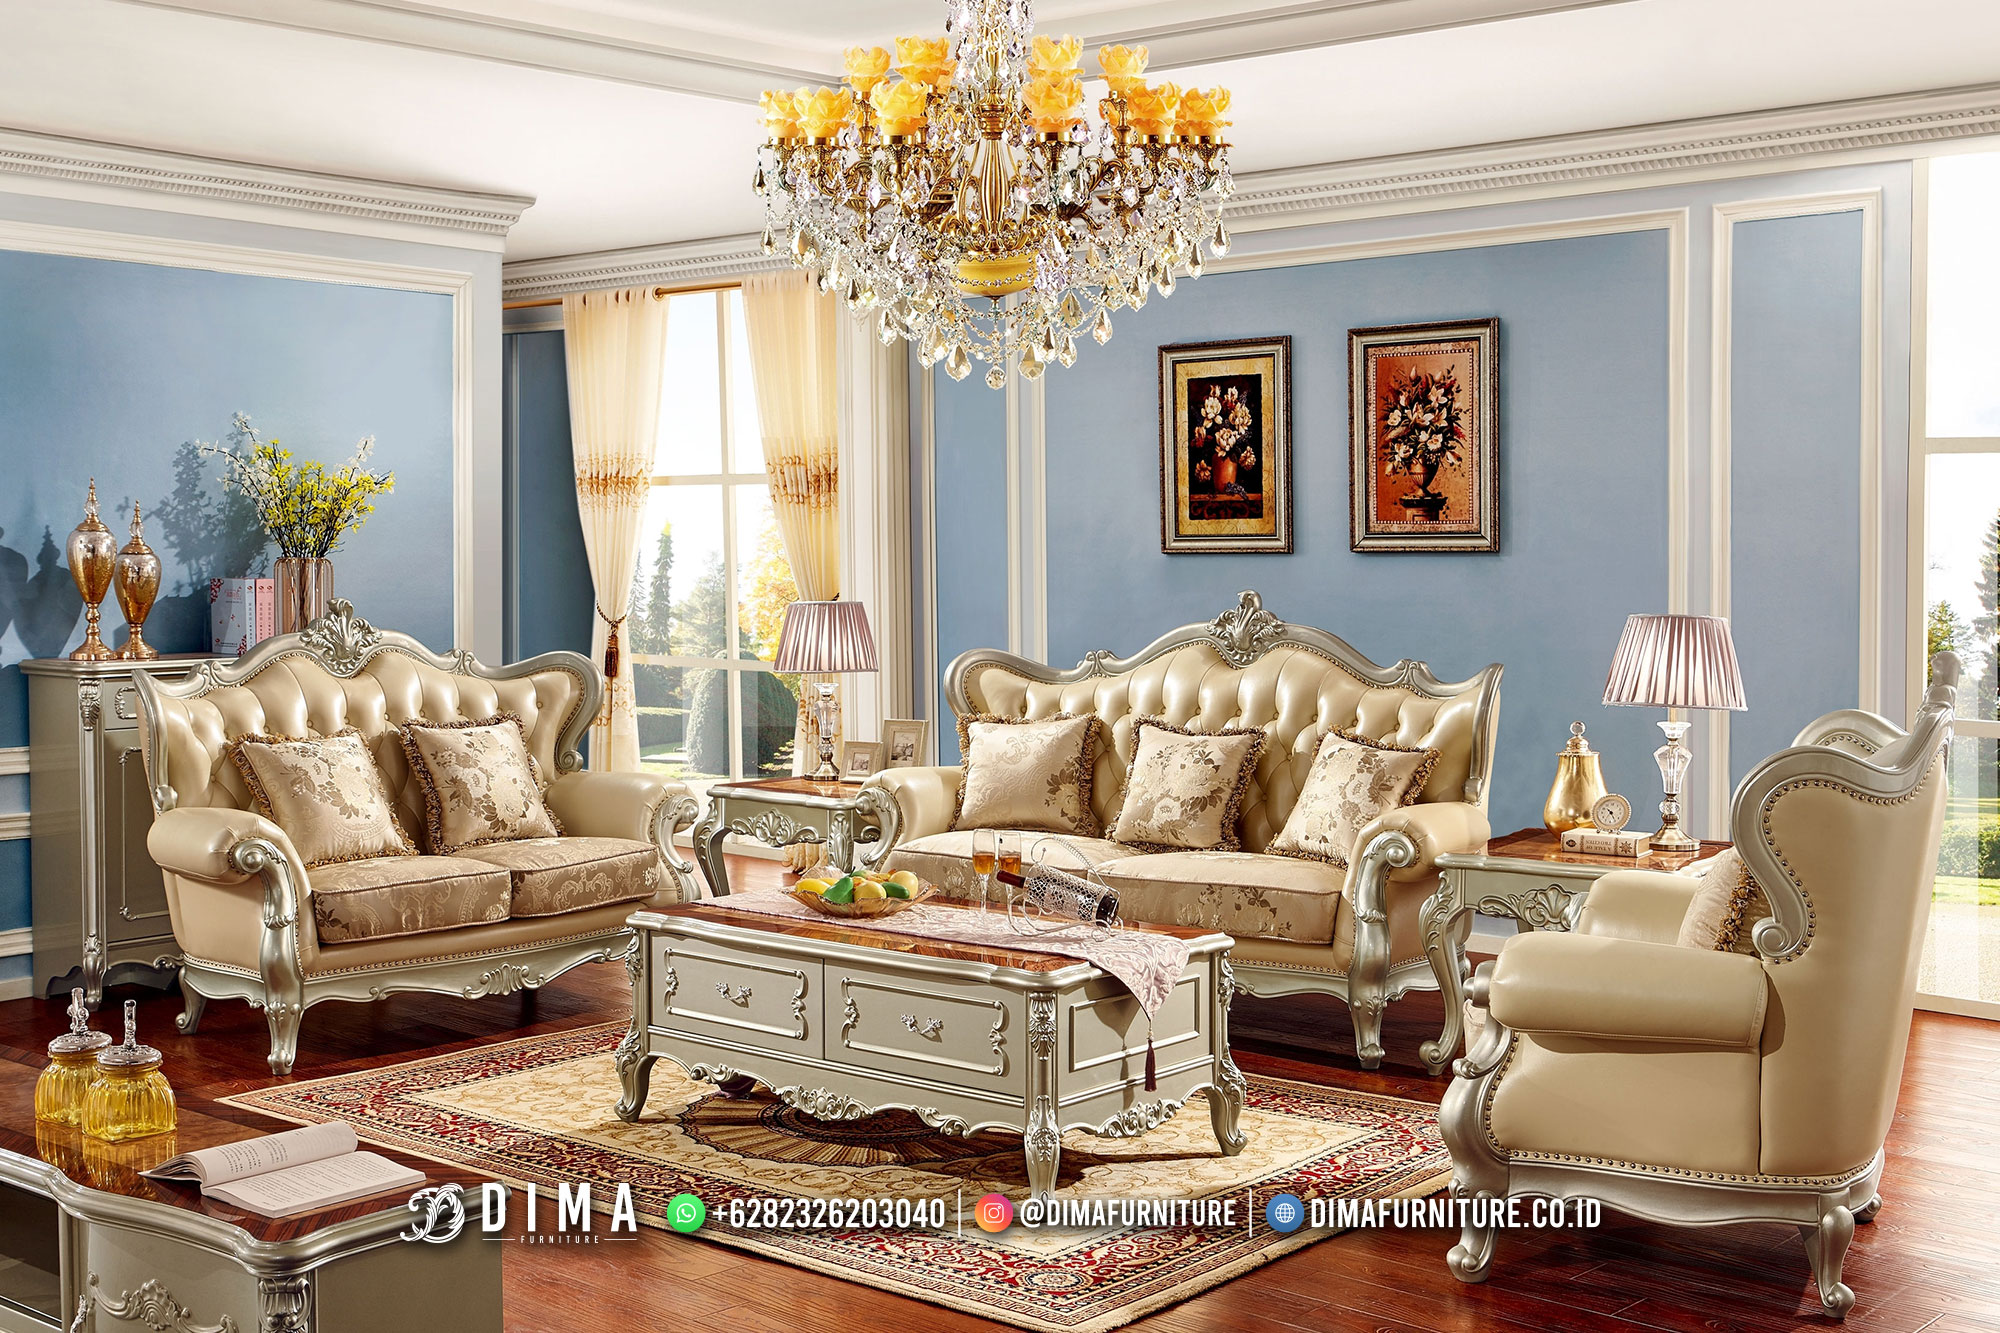 Desain Terbaru Kursi Sofa Tamu Mewah Klasik Home Decor 464MJ